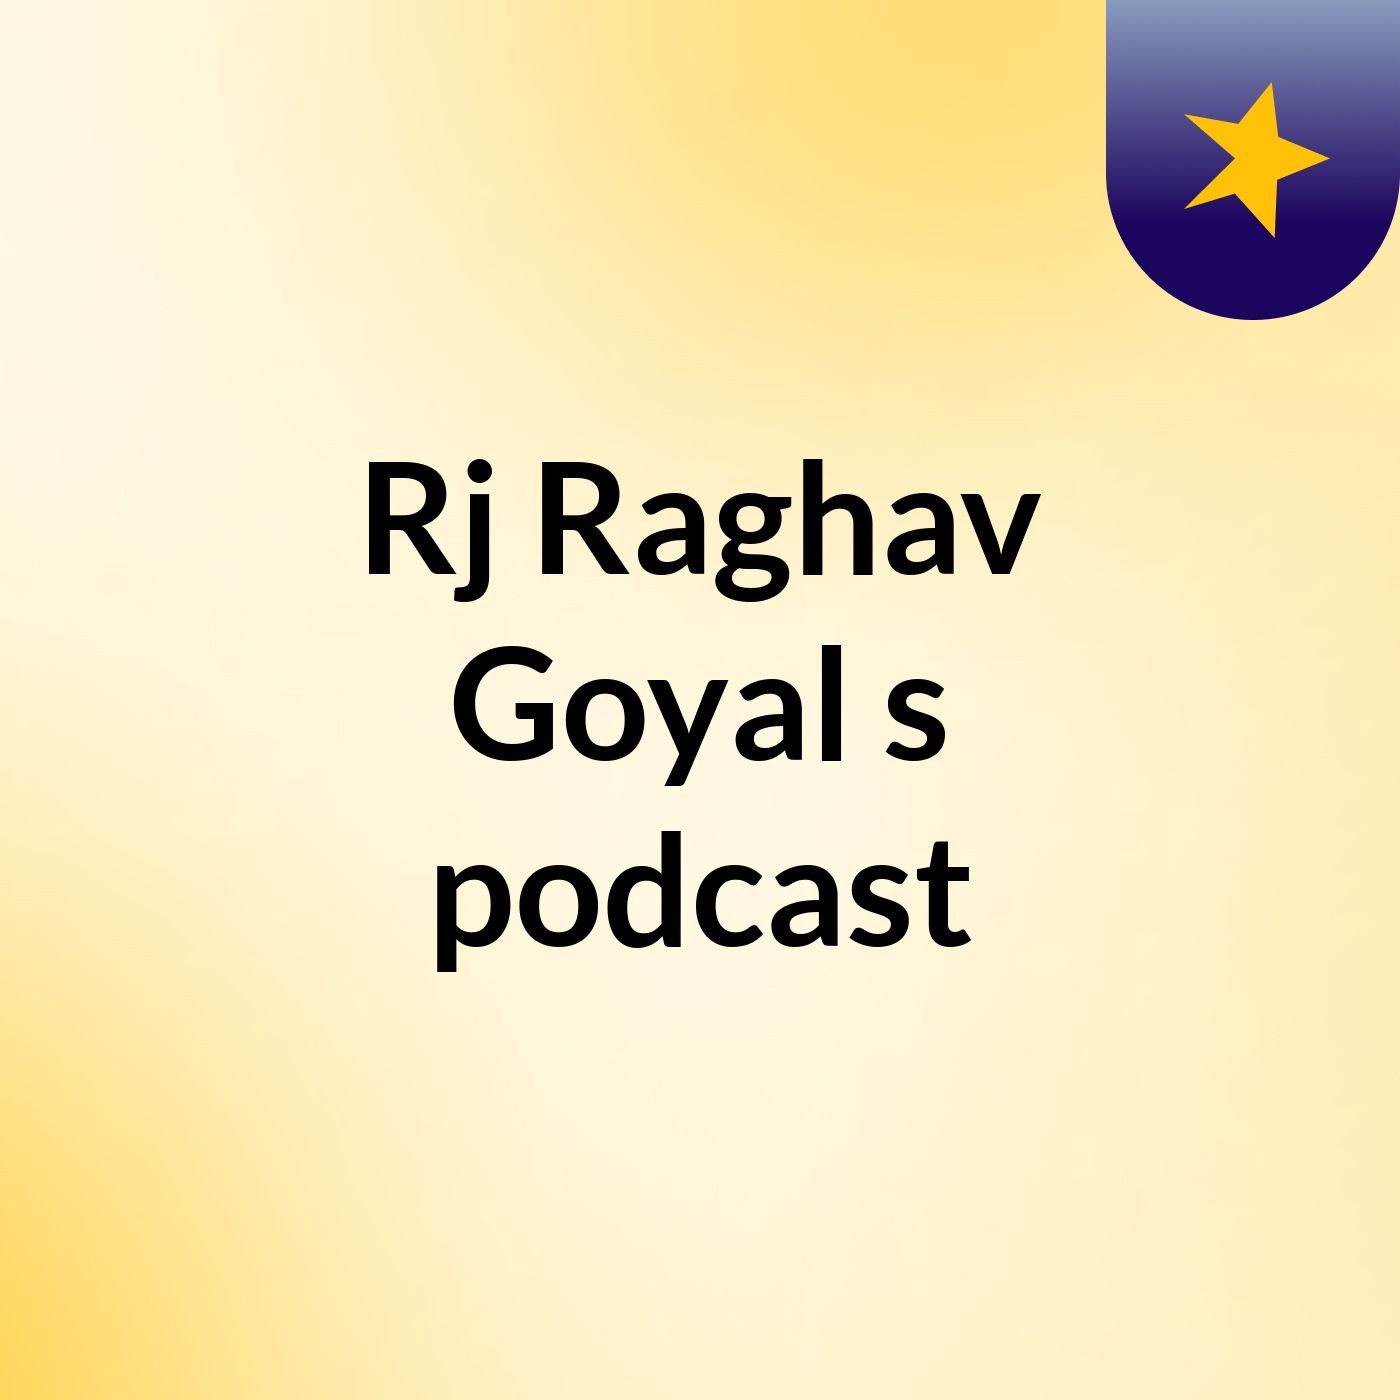 Episode 2 - Rj Raghav Goyal's podcast